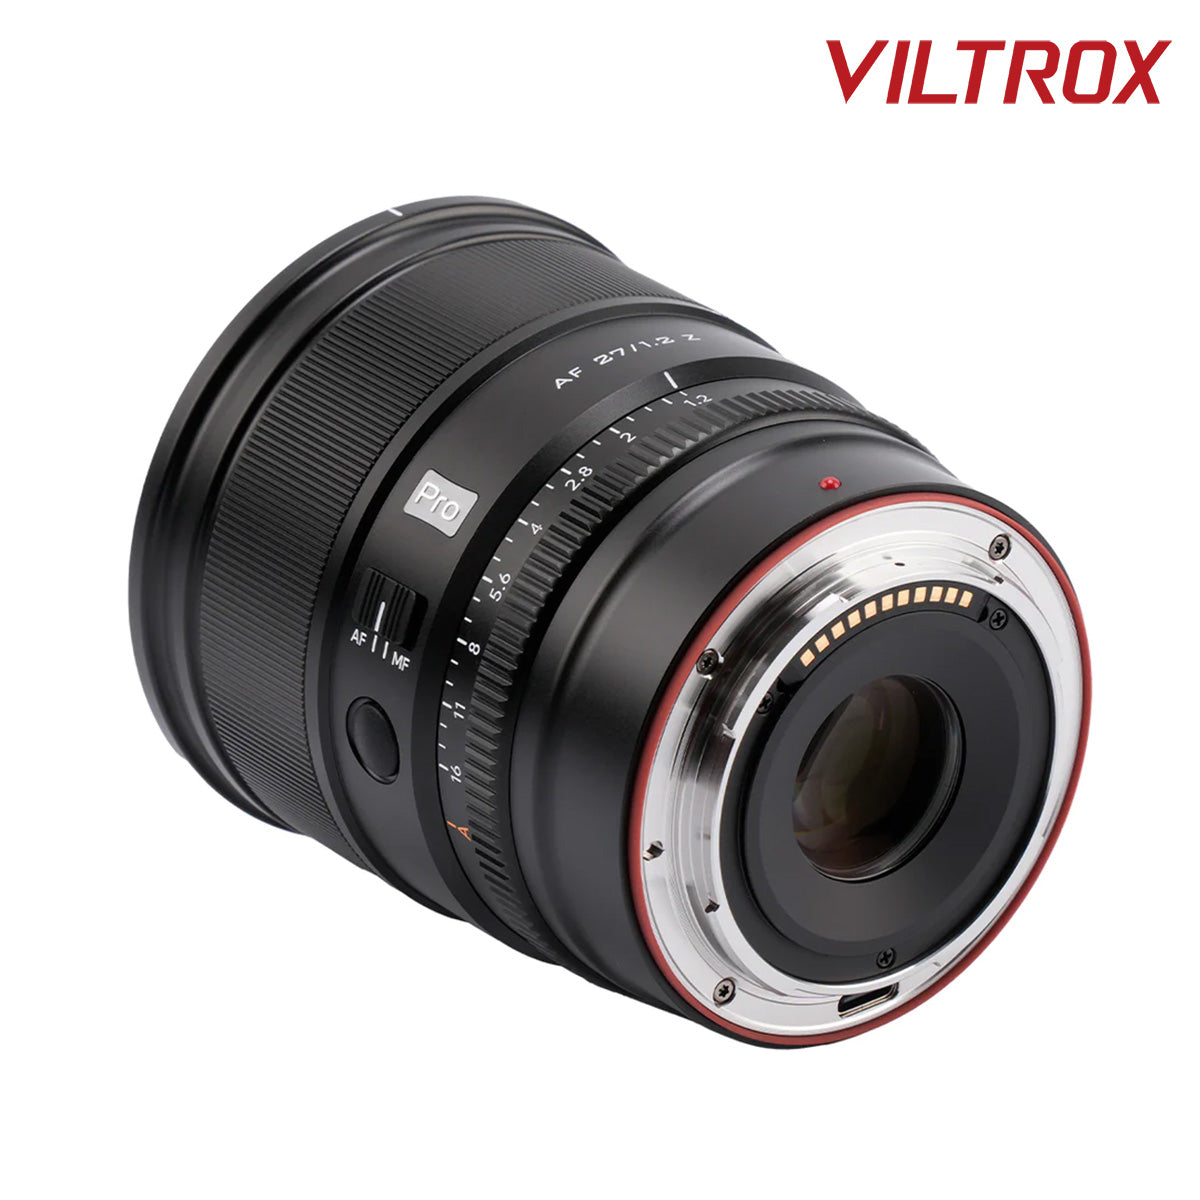 Viltrox Auto Focus 27mm f1.2Z PRO Prime Lens for Nikon APS-C Z-mount